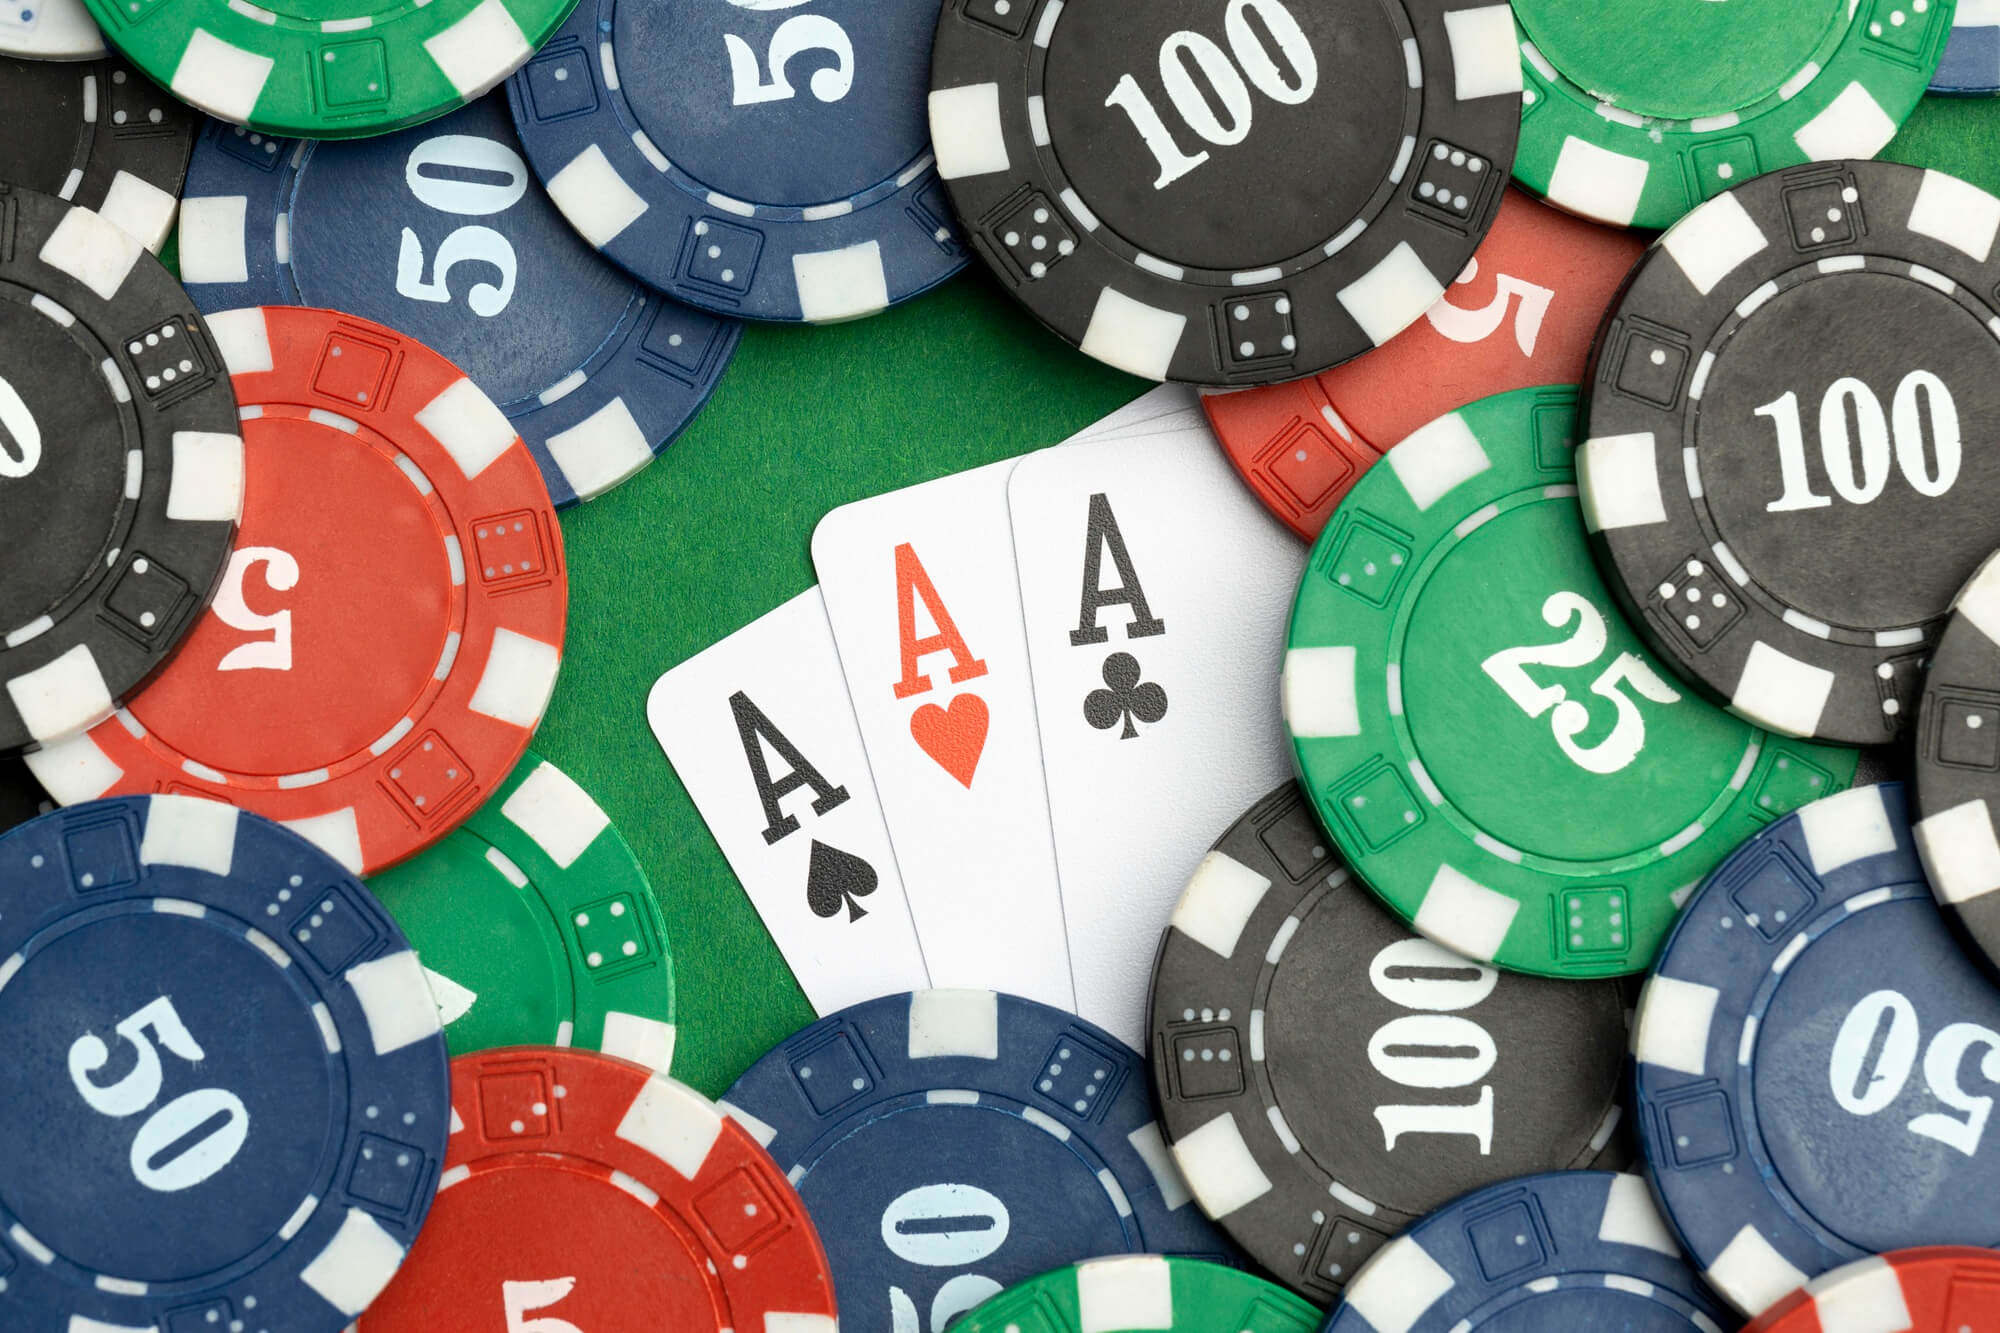 Casino Rocket App Casino Rocket App näki päivänvalon vuonna 2020. Riippuen siitä, missä päin maailmaa sovelluksen välityksellä pelaa, se tarjoaa jopa 3000 eri peliä, jotka ovat peräti 35 eri pelistudion käsialaa. Casino Rocket on nopeasti noussut suosioon pelaajien keskuudessa. Sen turvallisuutta ja luotettavuutta ohjaavat Curacaon sille myöntämä pelilisenssi, joka takaa nettikasinon laadun. Lue lisää Casino Rocketin mobiilisovelluksesta, sen asentamisesta sekä yhteensopivista laitteista. Miten Casino Rocket App toimii? Casino Rocket Appilla ei tällä hetkellä ole käytössä omaa konekieleen perustuvaa sovellusta, joka pitäisi ladata älypuhelimelle tai tabletille sovelluskaupasta. Oman sovelluksen sijaan Casino Rocket App toimii internetselaimen HTML5-koodiin perustuvalla sovelluksella. Niinpä pelaajien ei tarvitse ladata laitteilleen ylimääräisä sovelluksia, vaan he voivat vain avata kasinosivun haluamallaan laitteella, jonka jälkeen sivusto sopeutuu automaattisesti laitetta varten. Casino Rocket App on yhteensopiva useimpien yleisten älypuhelinten kanssa riippumatta niiden valmistajasta tai niiden käyttöliittymästä. Jotta sovelluksella pelaaminen olisi mahdollisimman turvallista, mitään siihen liittyvää ei tule ladata puhelimelle tai tabletille ulkopuolisilta tahoilta. Niinpä Casino Rocket Appin kanssa ei kannata asentaa ulkopuolisia sovelluksia, sillä kaikki pelaamiseen tarvittava on saatavilla nettiselaimen avulla. Kasinolla on tuhansia pelejä, joten kaikkien niiden paketoiminen samaan sovellukseen turvallisesti ja toimivasti olisi teknisesti erittäin vaikeaa. Maksaminen ja asiakaspalvelu Casino Rocket Appin pelaajat voivat käyttää useita maksuvälineitä. Näihin lukeutuvat niin perinteiset pankkikortit kuin modernit kryptovaluutat. Käytettävät maksuvälineet voivat vaihdella sen mukaan, minkä maan alueelta kasinoa haluaa käyttää. Maksuvälineestä riippuen voittojen ja talletusten kotiuttaminen Casino Rocket Apilta saattaa kestää jopa 3 päivää kotiutuksen turvallisuuden takaamisen vuoksi. Casino Rocket Appin asiakaspalvelu on tavoitettavissa sähköpostitse osoitteella support@rocketcasino.com. Tämän lisäksi nettisivustolla on mahdollisuus yhteydenottoon joko lomakkeen tai chatin välityksellä. Lopuksi Casino Rocket App on sen laajan käytettävyyden ja yhteensopivuuden ansiosta hyvä vaihtoehto uusille, nettikasinoa etsiville pelaajille. Sen vahvuuksiin voidaan lukea myös sen turvallisuus ja bonukset, jotka ovat tarjolla riippumatta pelaajan laitteesta tai selaimesta.